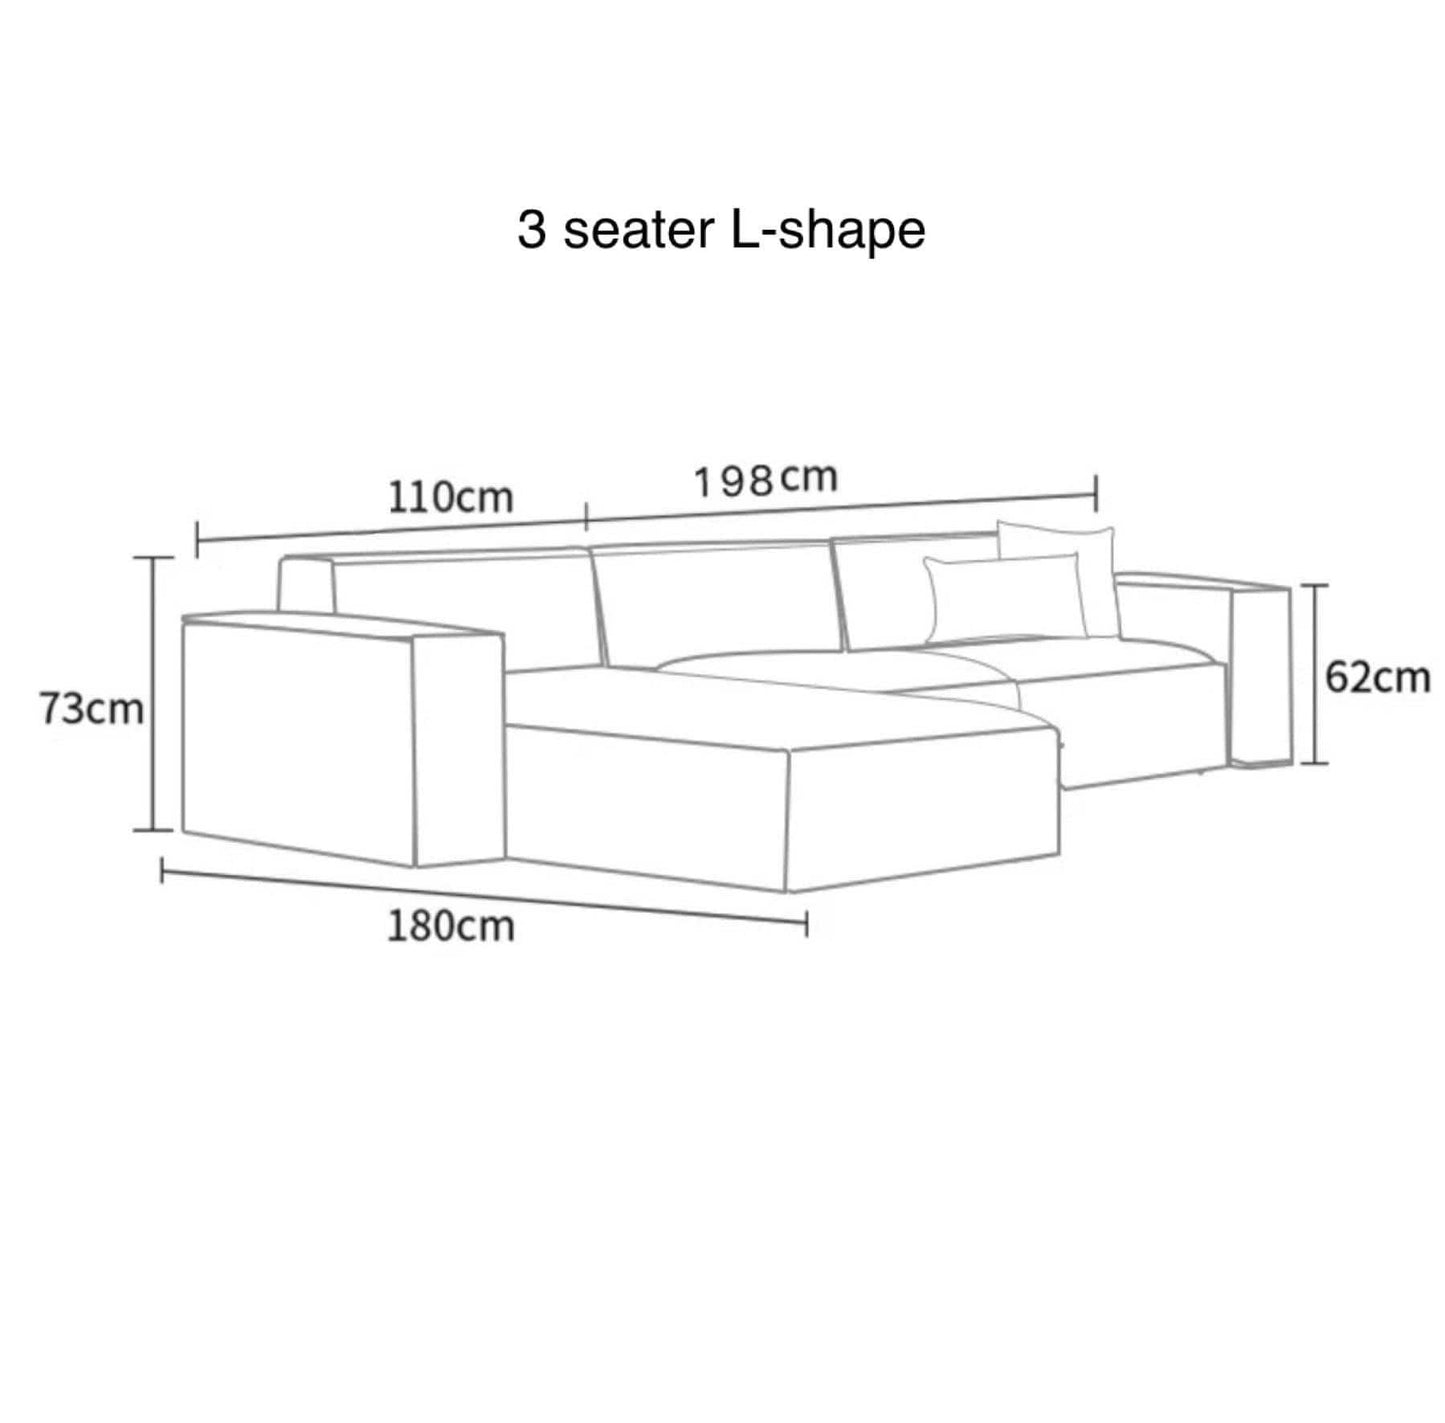 Home Atelier Cotton Linen Fabric / 3 seater L-shape/ Length 308cm / Cream Aureus Sectional Sofa